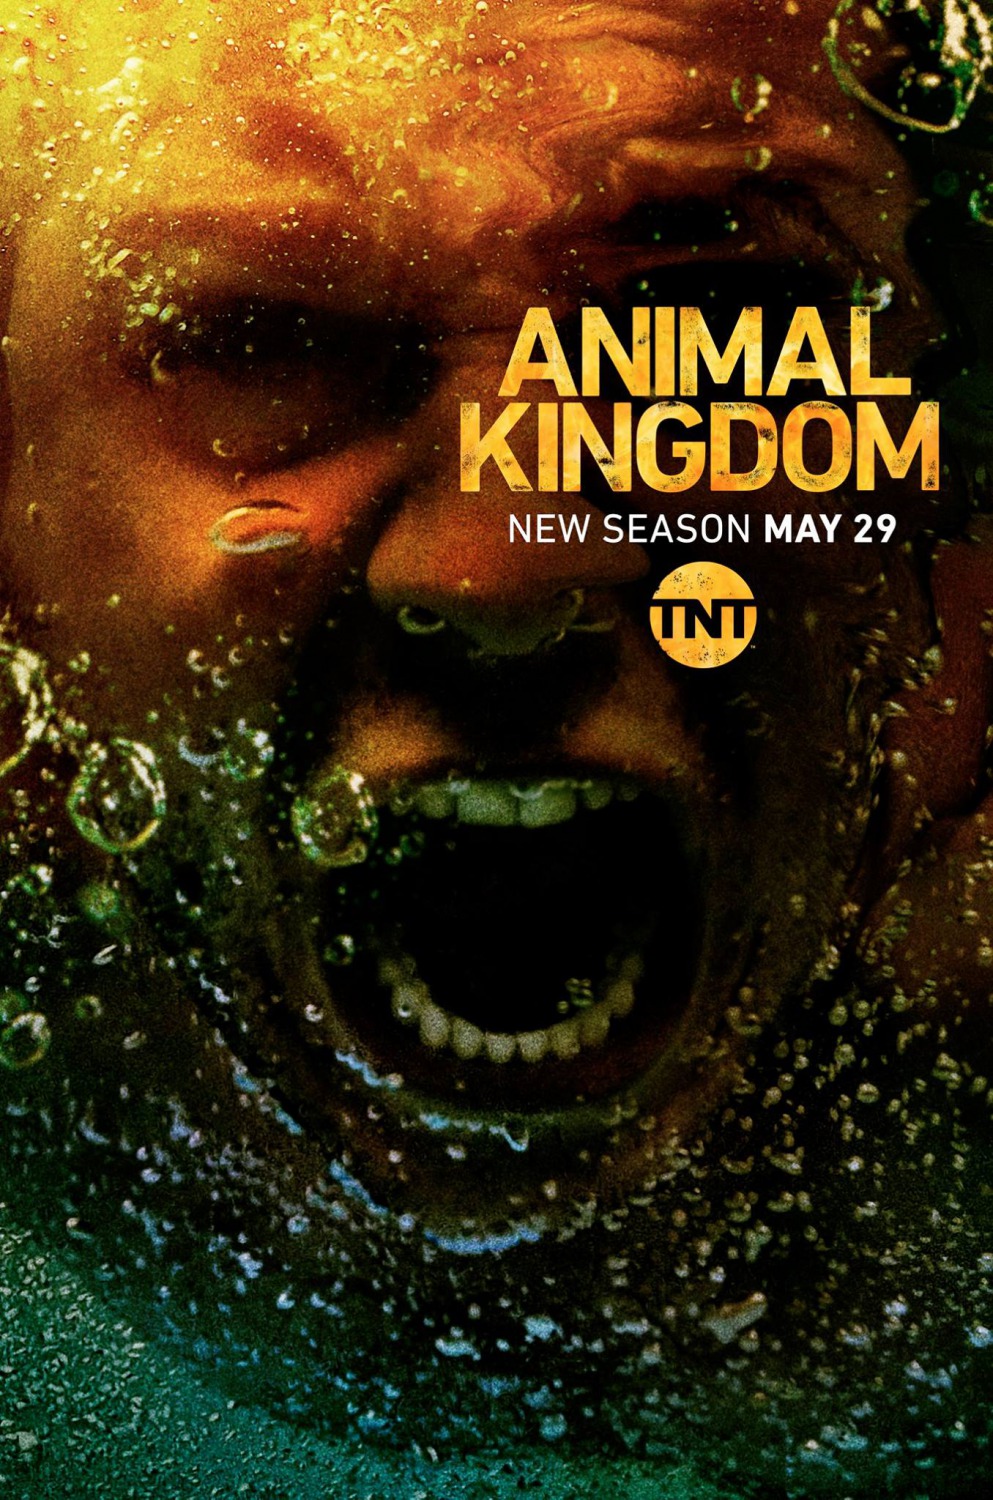 Animal Kingdom (#3 of 6): Extra Large Movie Poster Image - IMP Awards